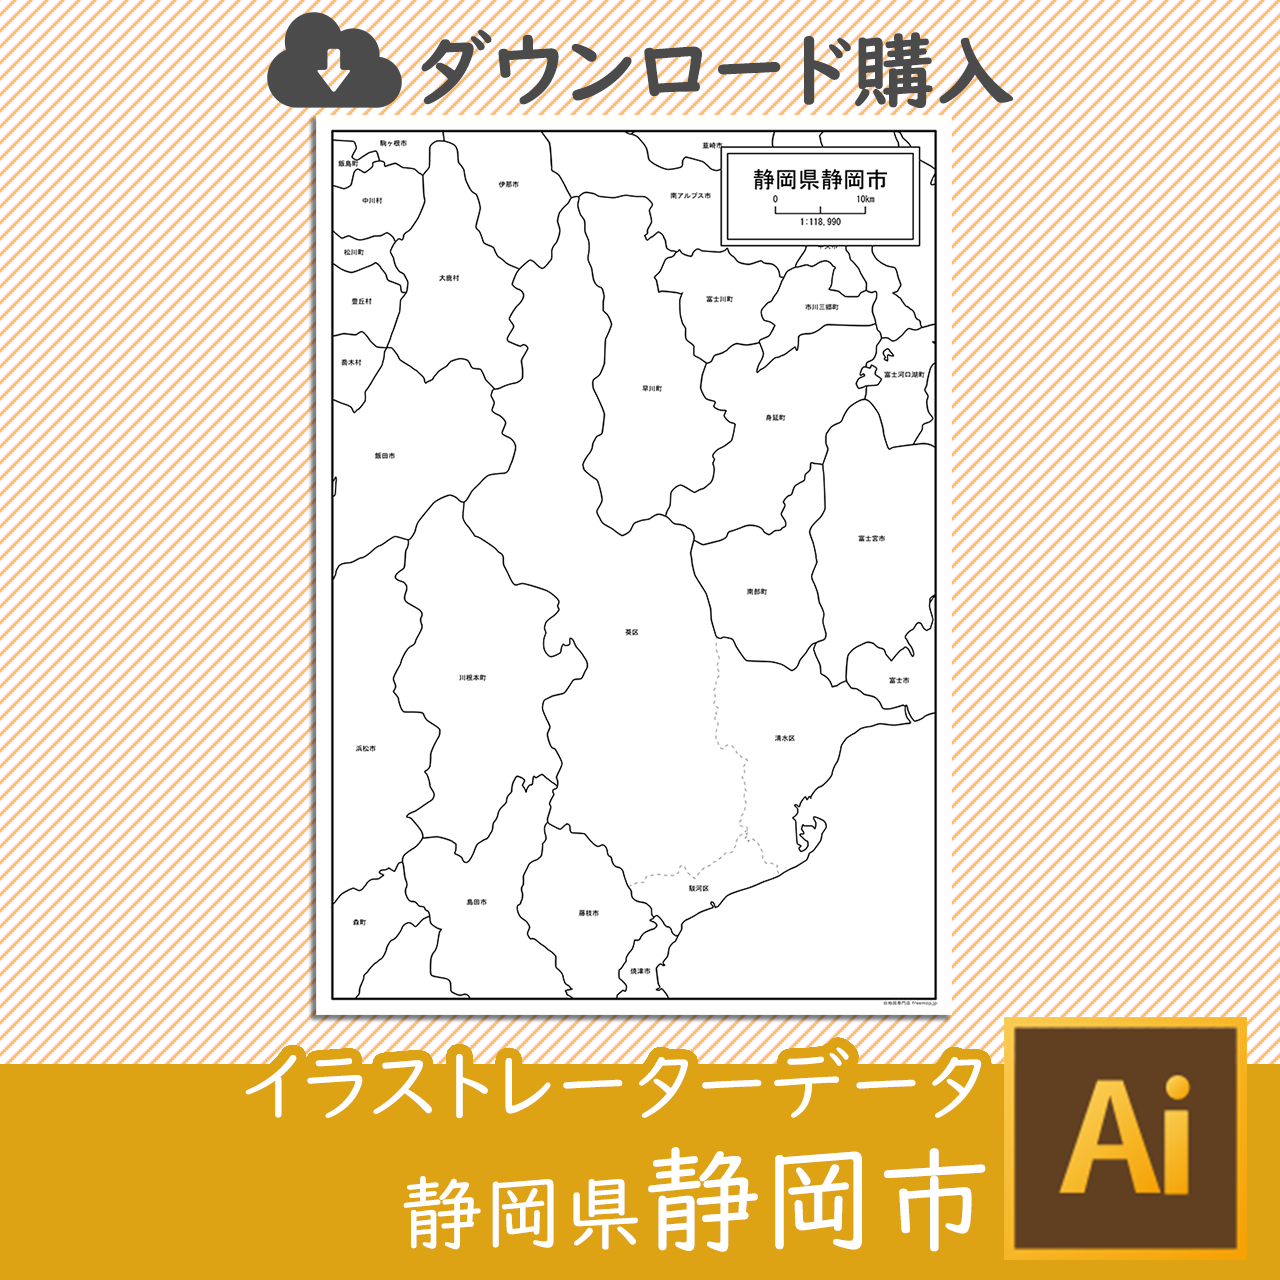 静岡県静岡市のaiデータのサムネイル画像